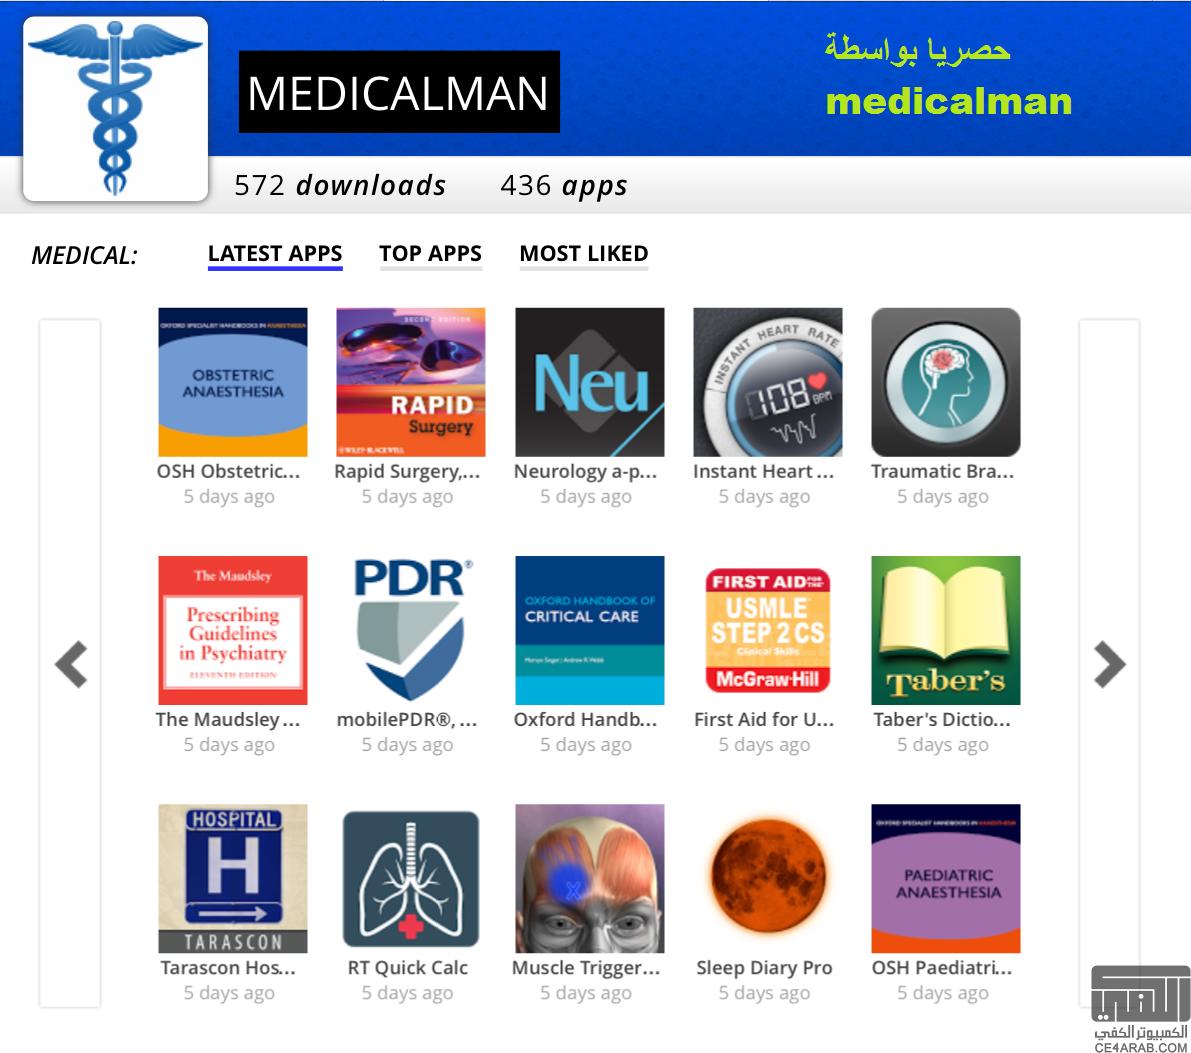 {اهداء}حصريا من (medicalman) متجر متخصص بالتطبيقات الطبية وقواميس